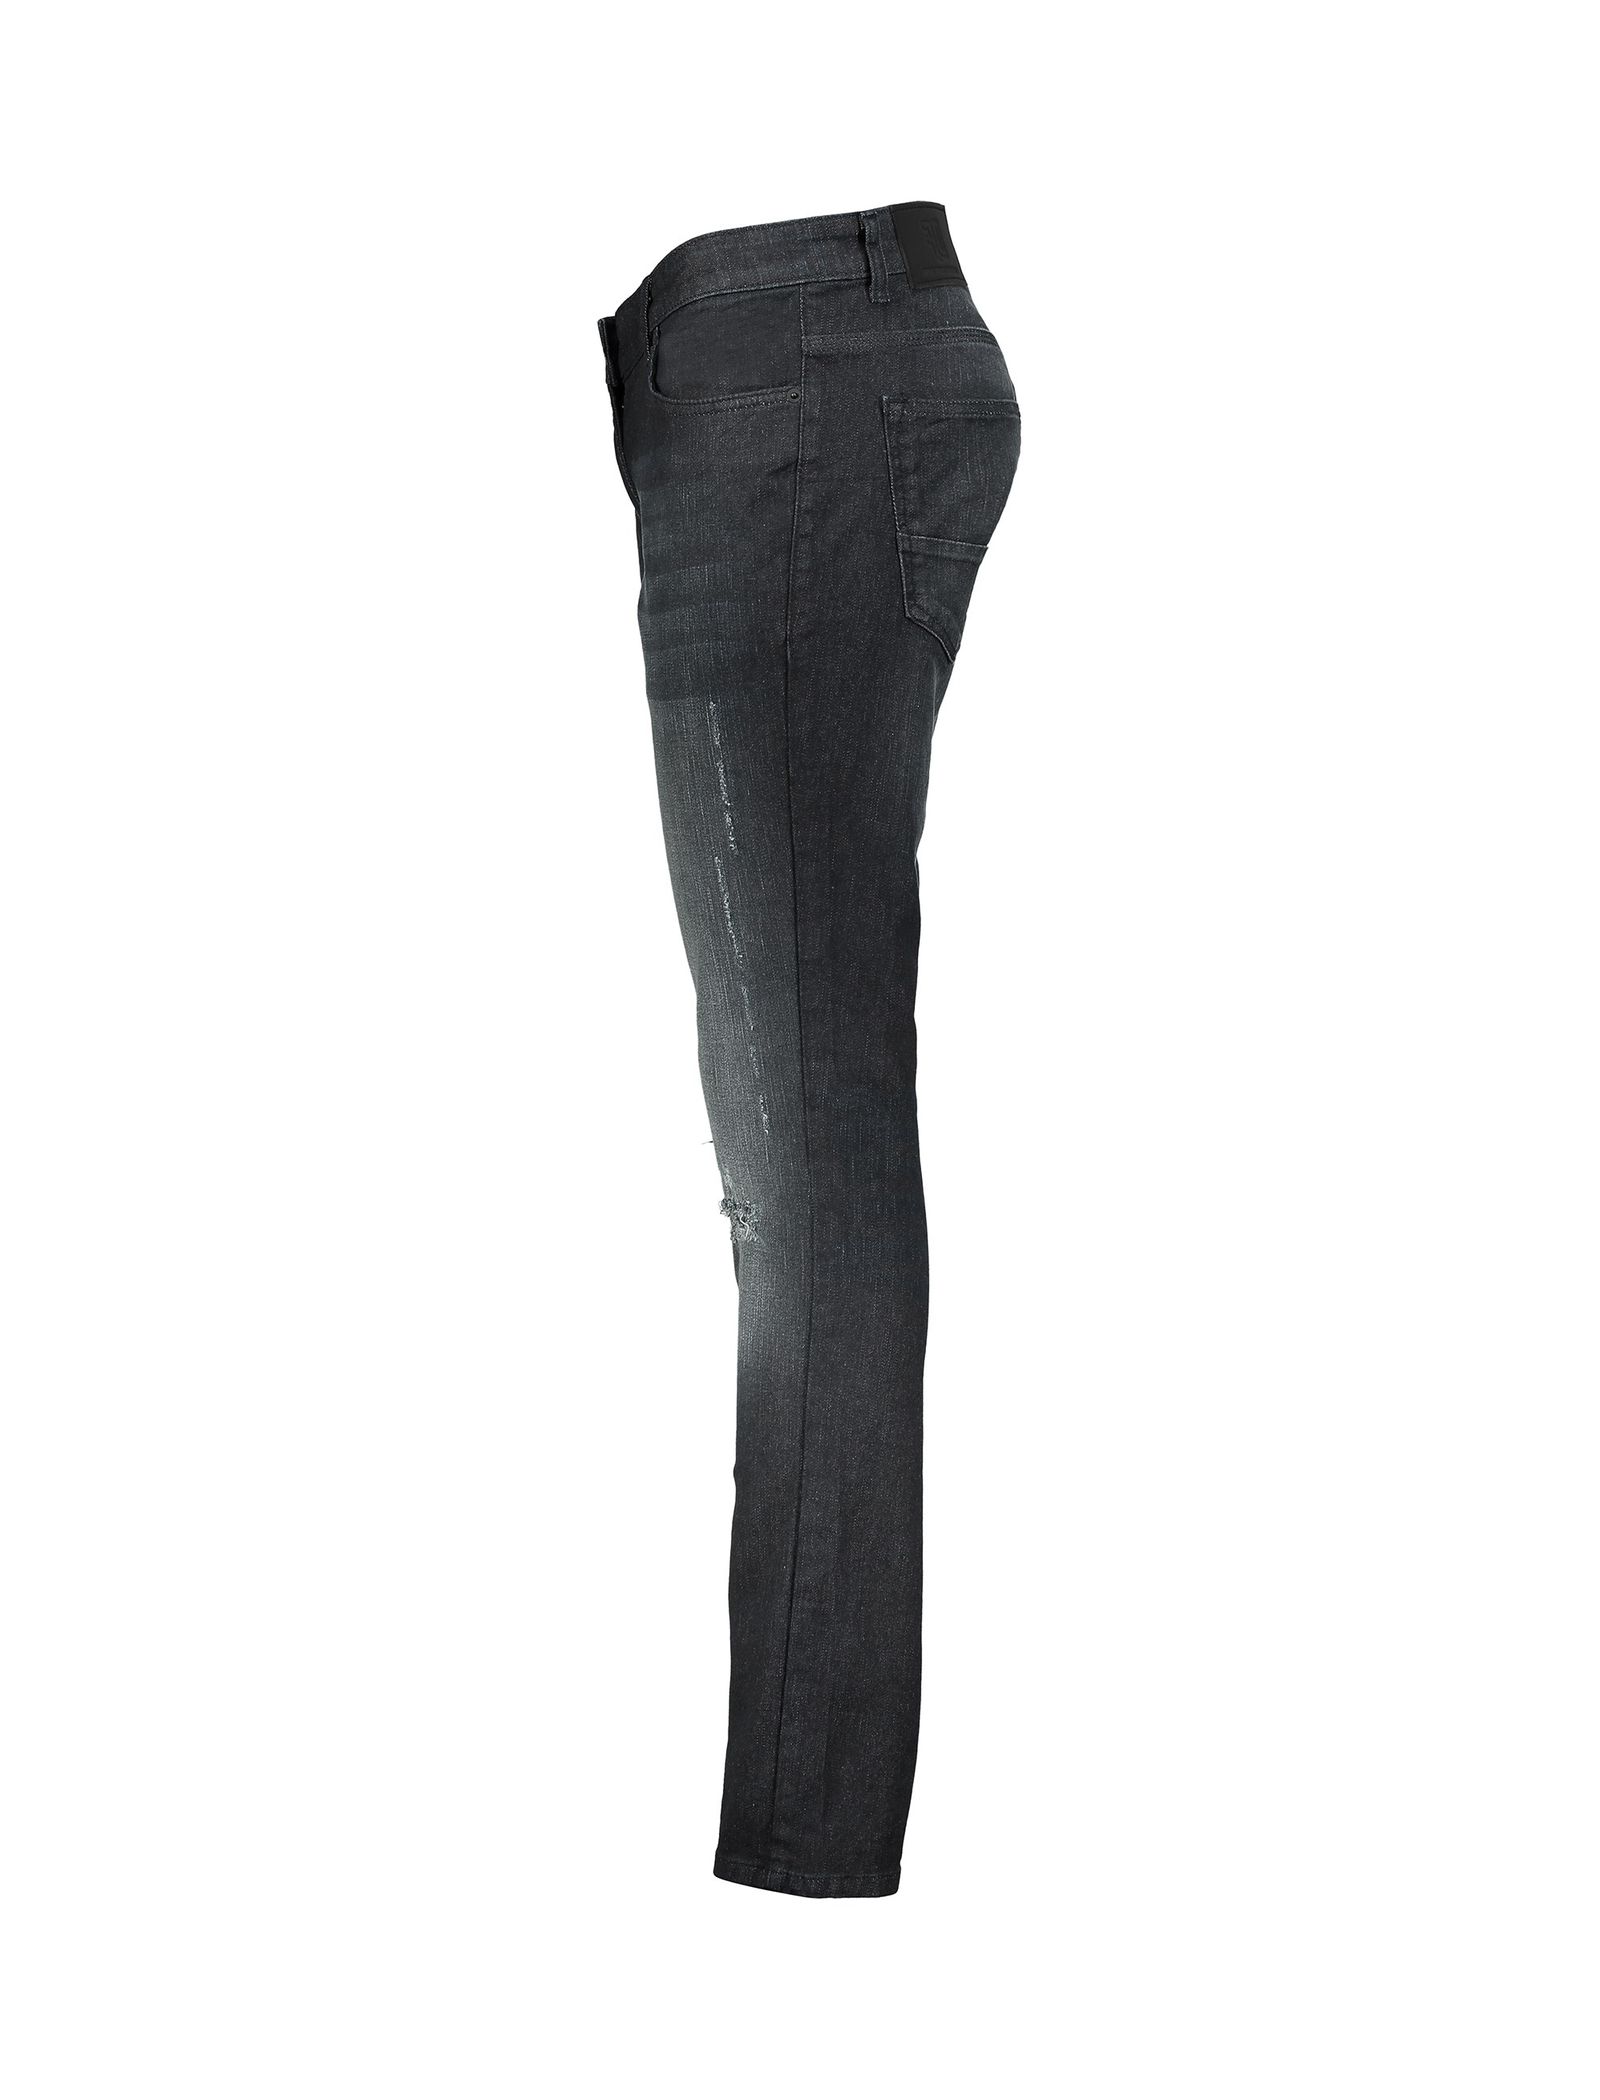 شلوار جین راسته مردانه - دفکتو - زغالي - 4